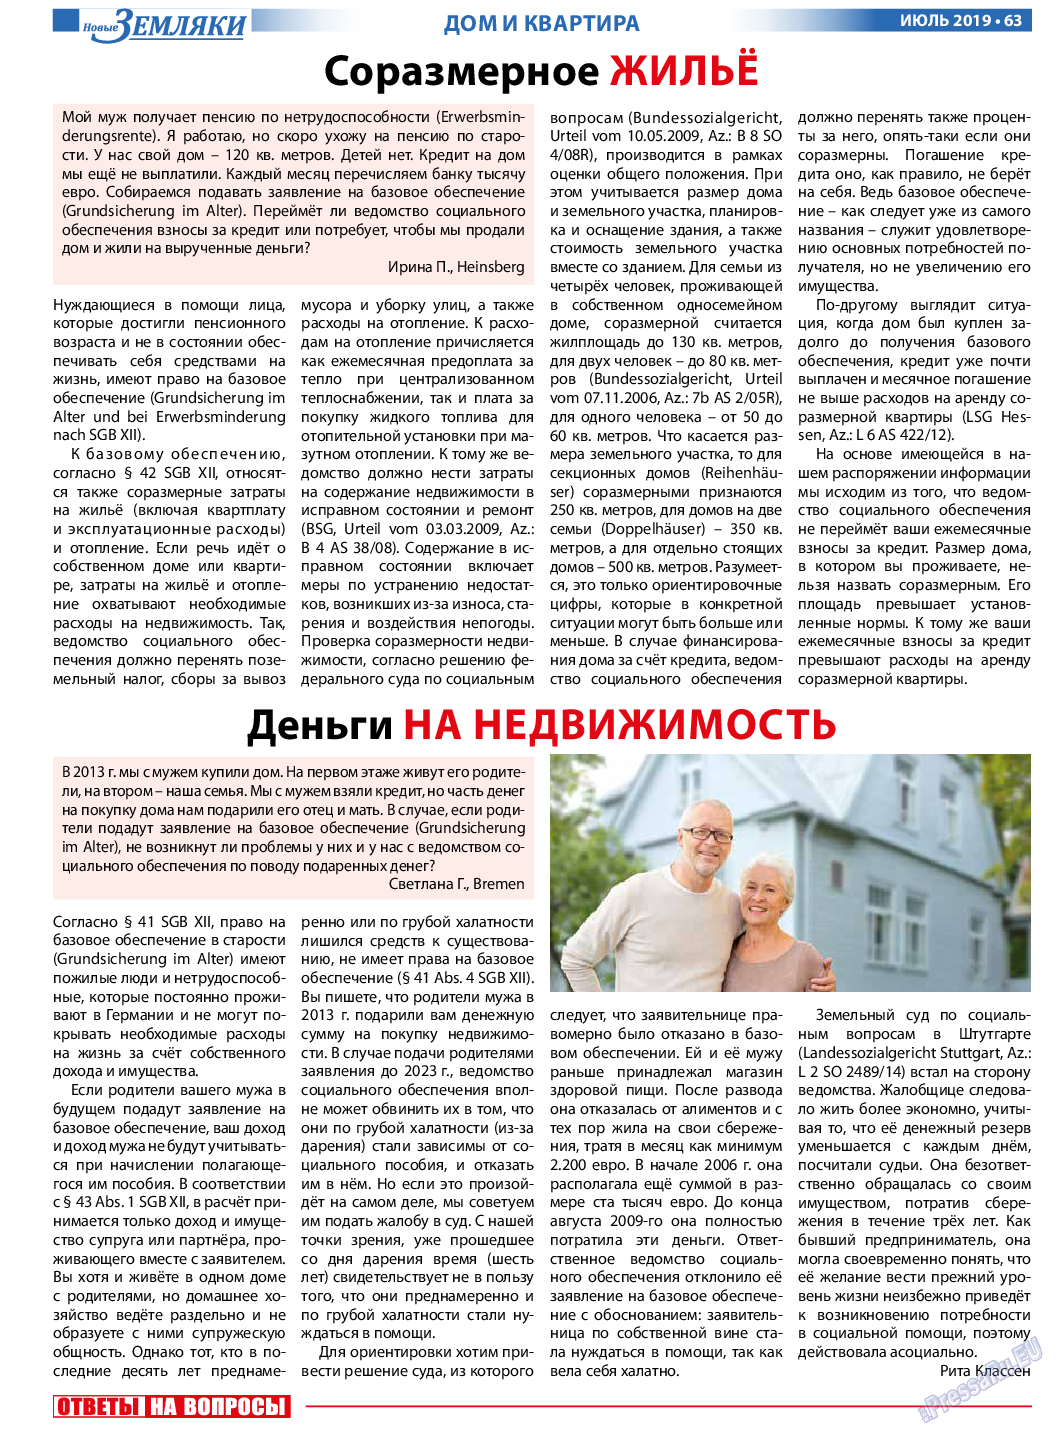 Новые Земляки, газета. 2019 №7 стр.63